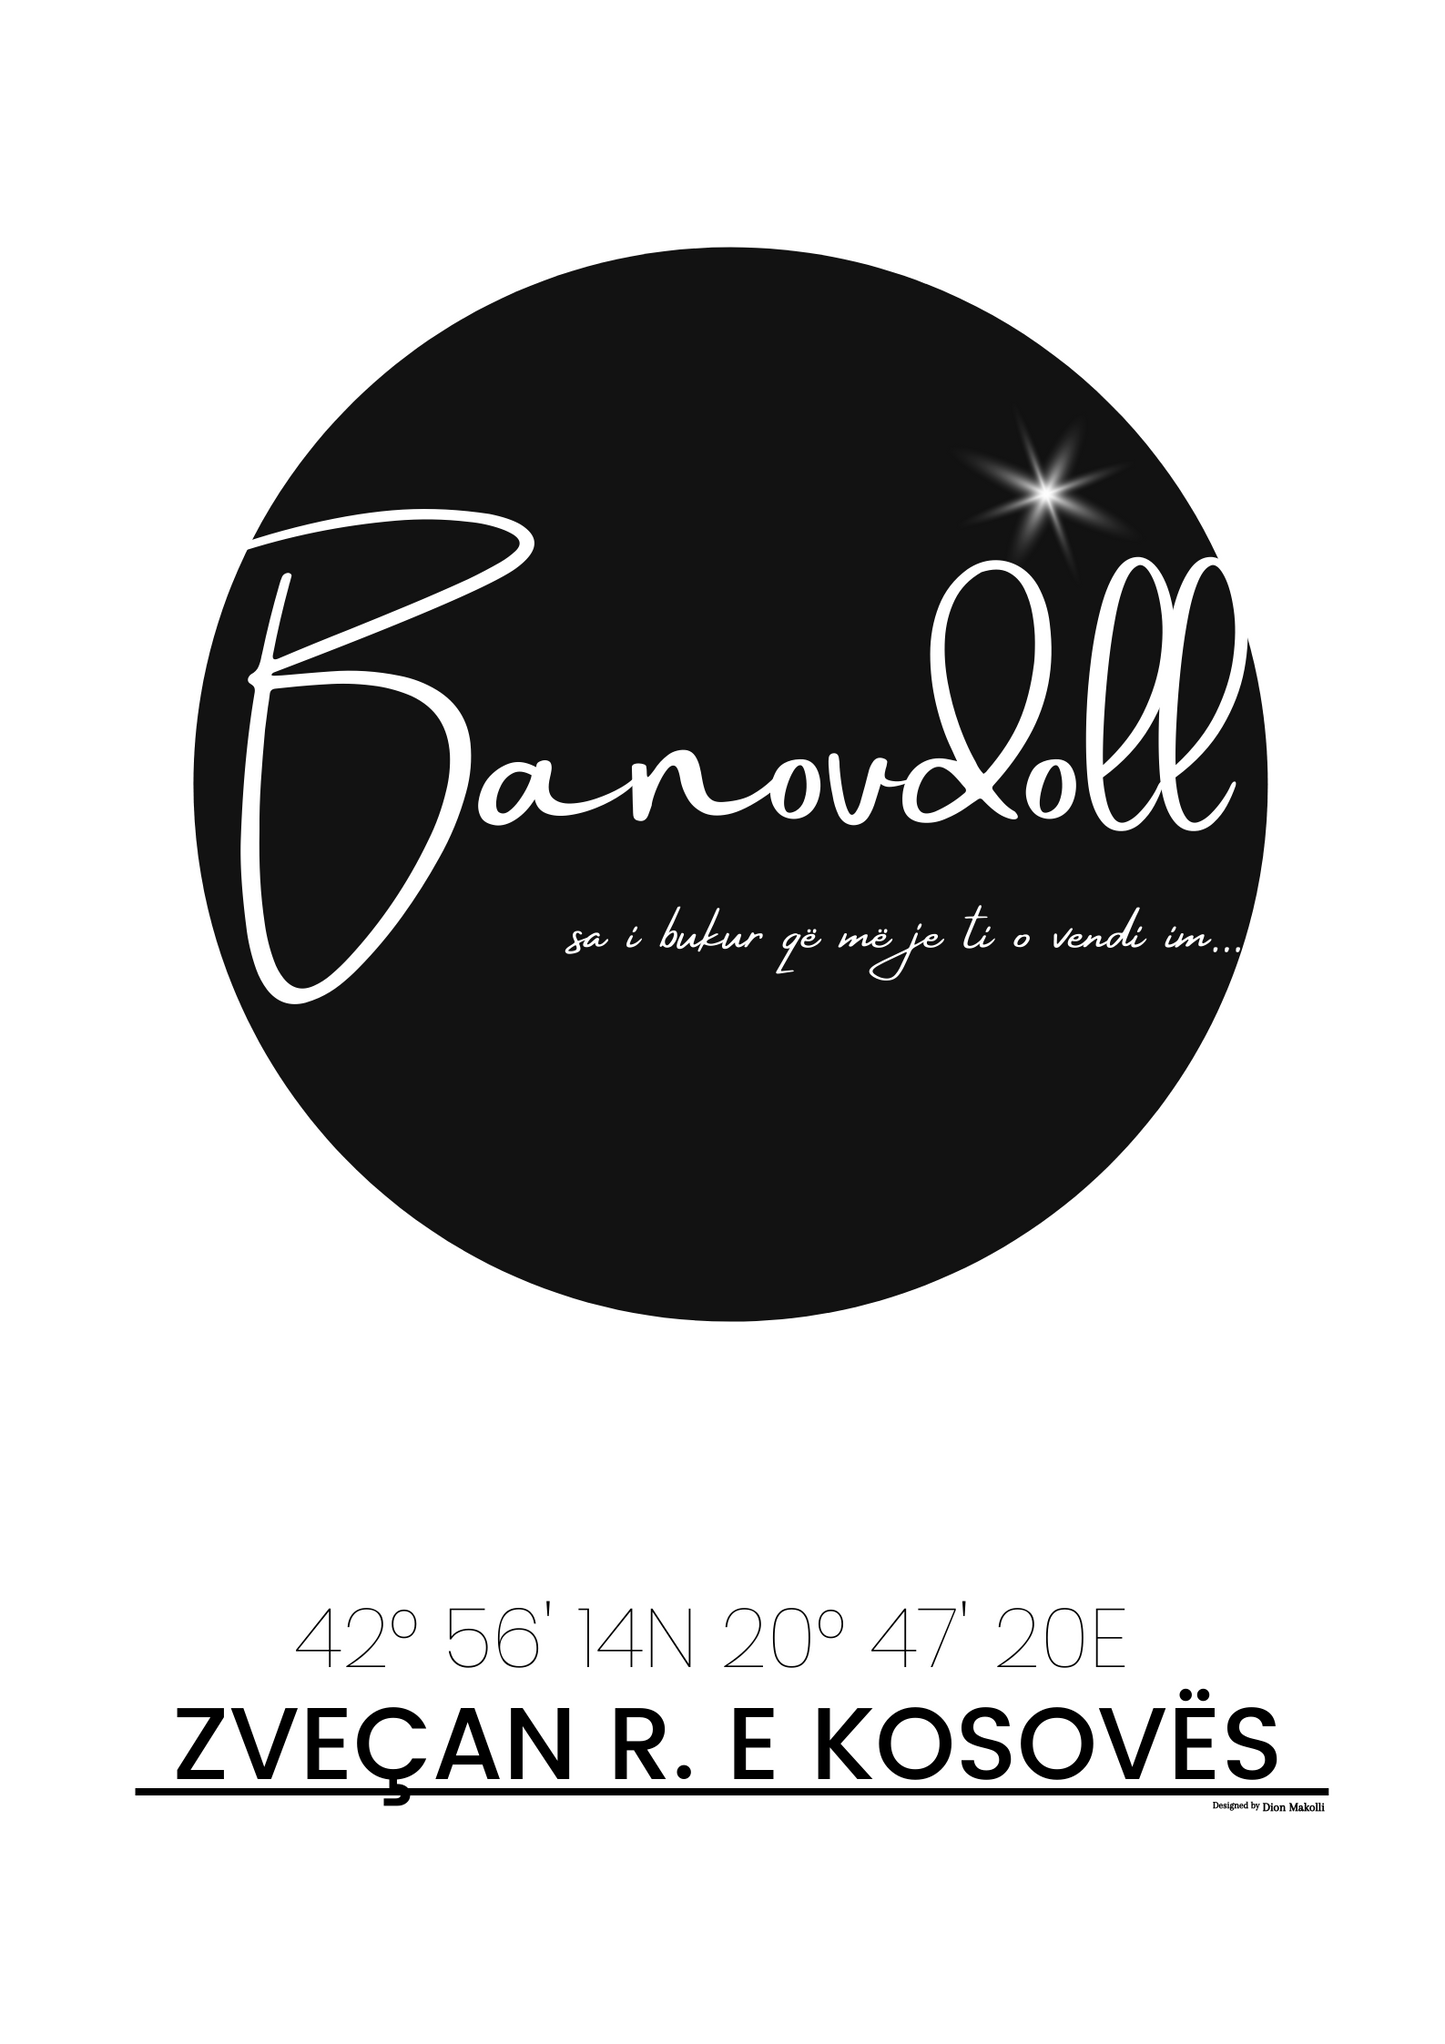 Banovdoll - poster